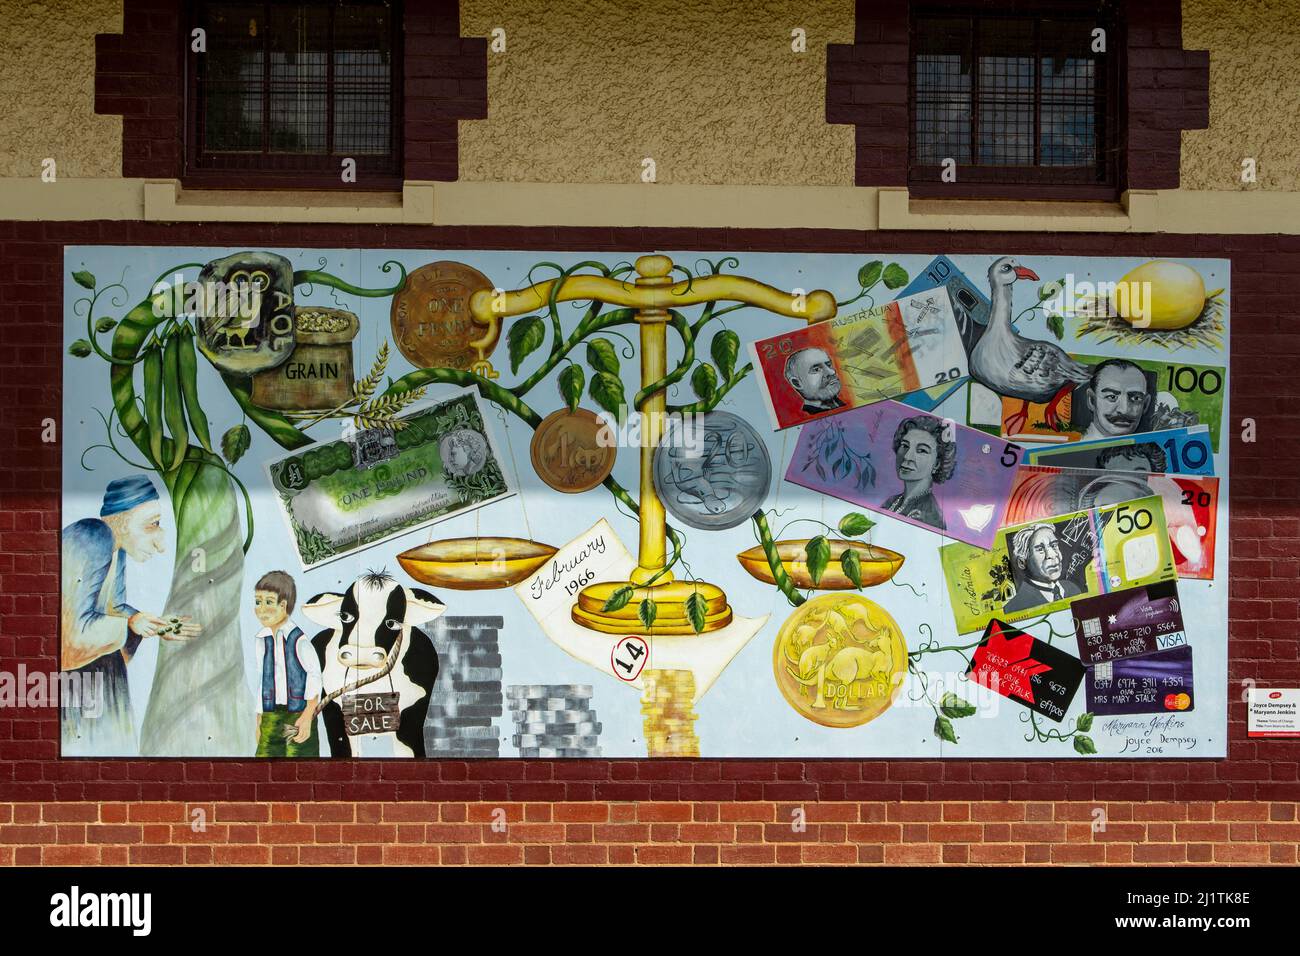 Primary School Mural Art, Rochester, Victoria, Australia Stock Photo